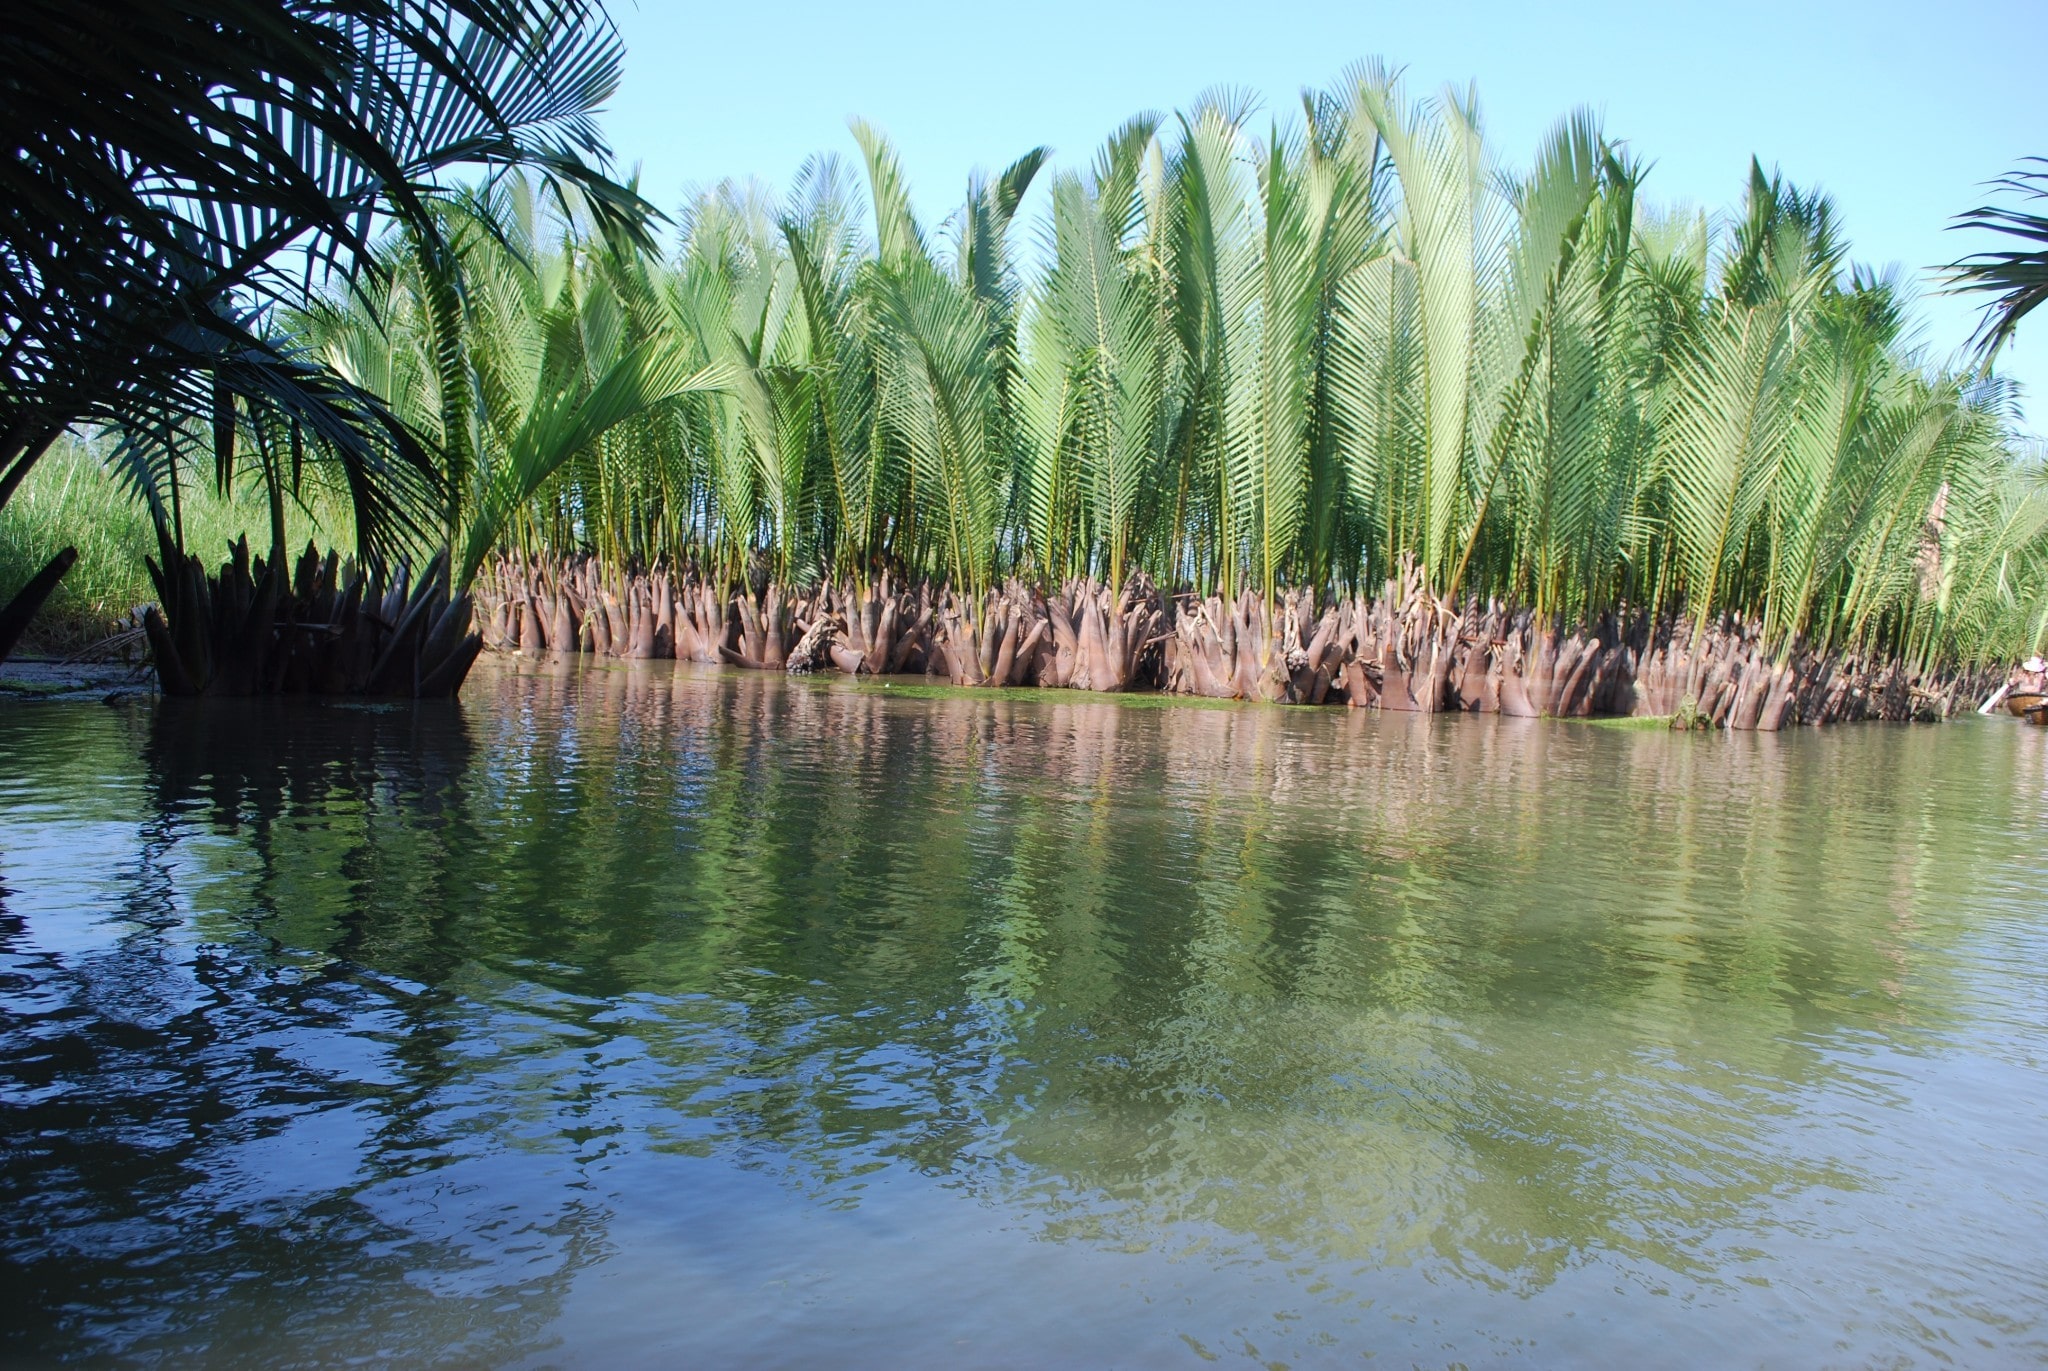 Du lịch sông nước miền Tây ngay trong lòng Hội An - Rừng dừa Bảy Mẫu còn gắn liền với những chiến tích lịch sử của dân tộc